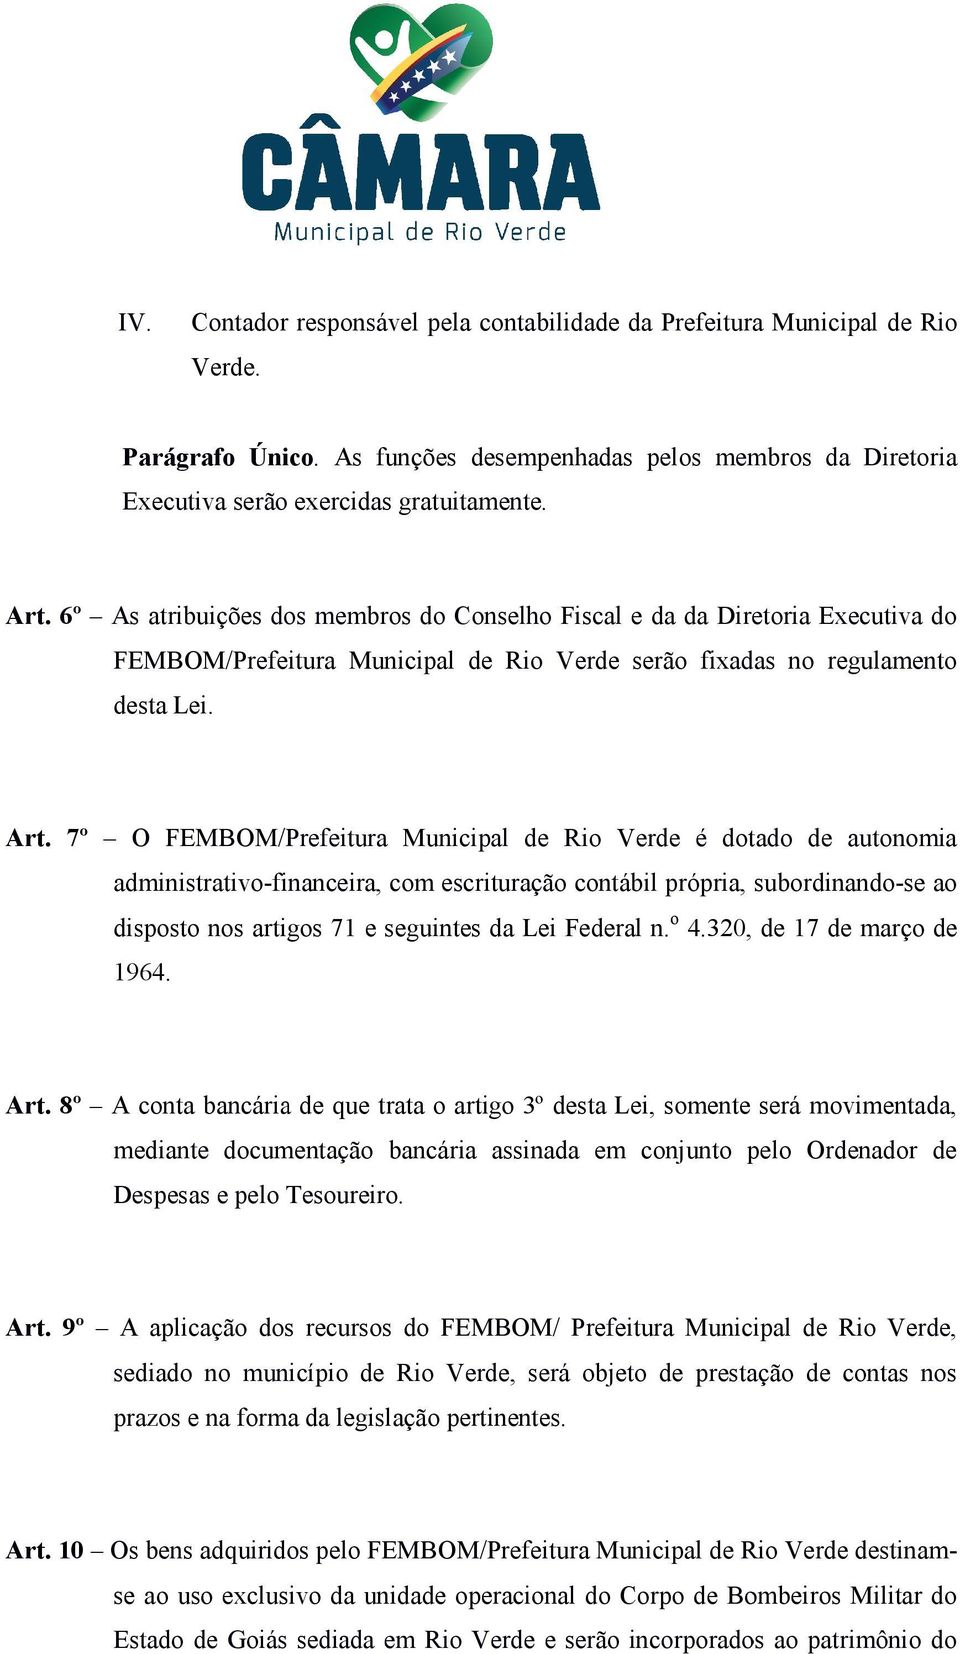 7º O FEMBOM/Prefeitura Municipal de Rio Verde é dotado de autonomia administrativo-financeira, com escrituração contábil própria, subordinando-se ao disposto nos artigos 71 e seguintes da Lei Federal